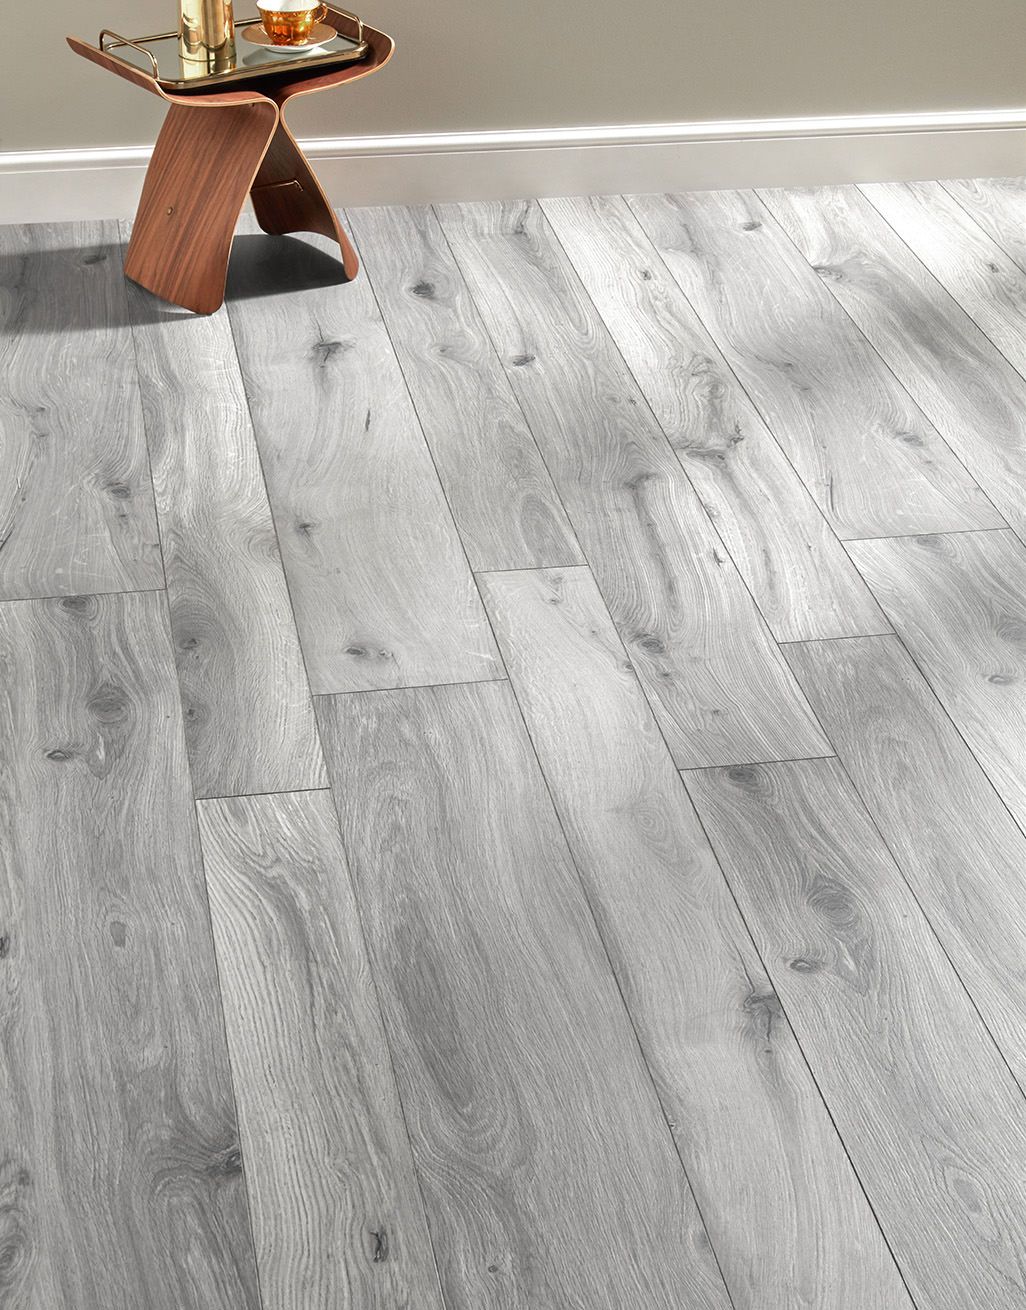 Coastal Grey Oak Laminate Flooring, Images Of Grey Laminate Flooring